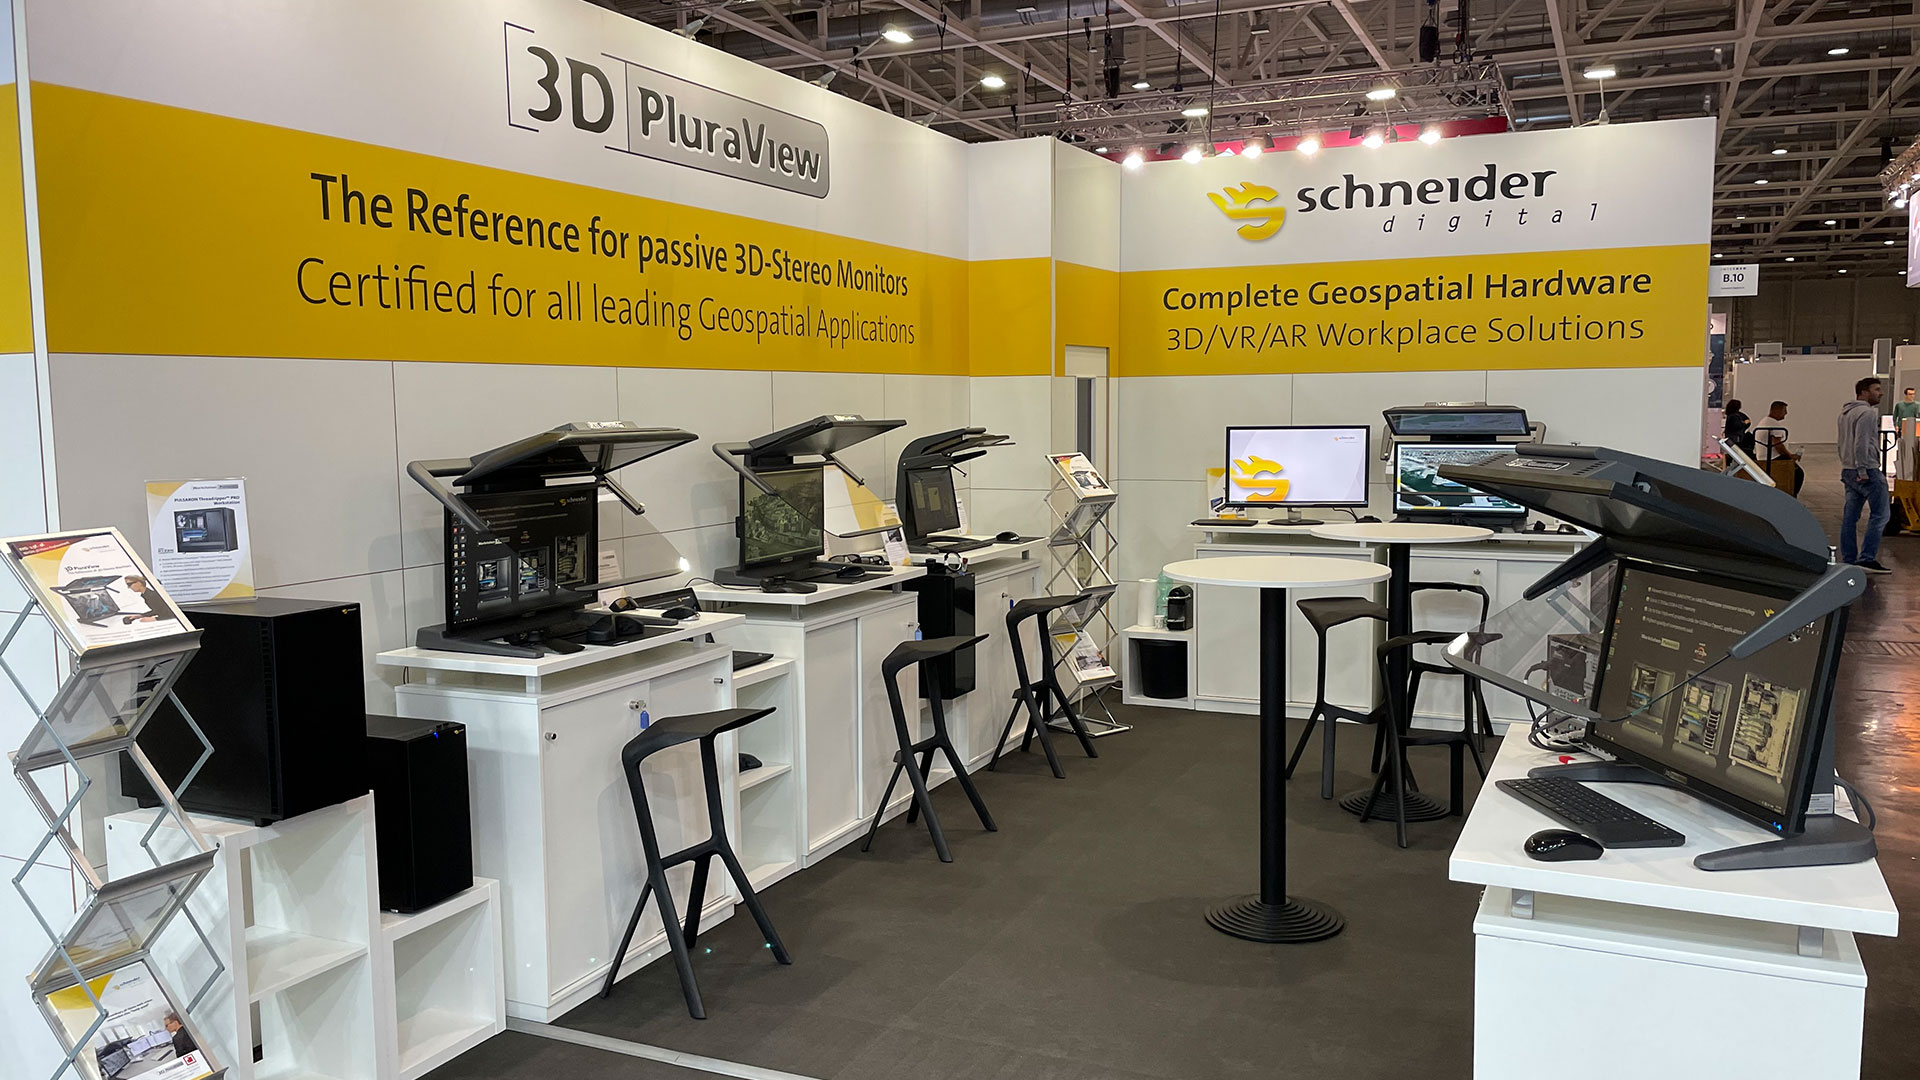 Schneider Digital Review INTERGEO 2021: 3D PluraView live